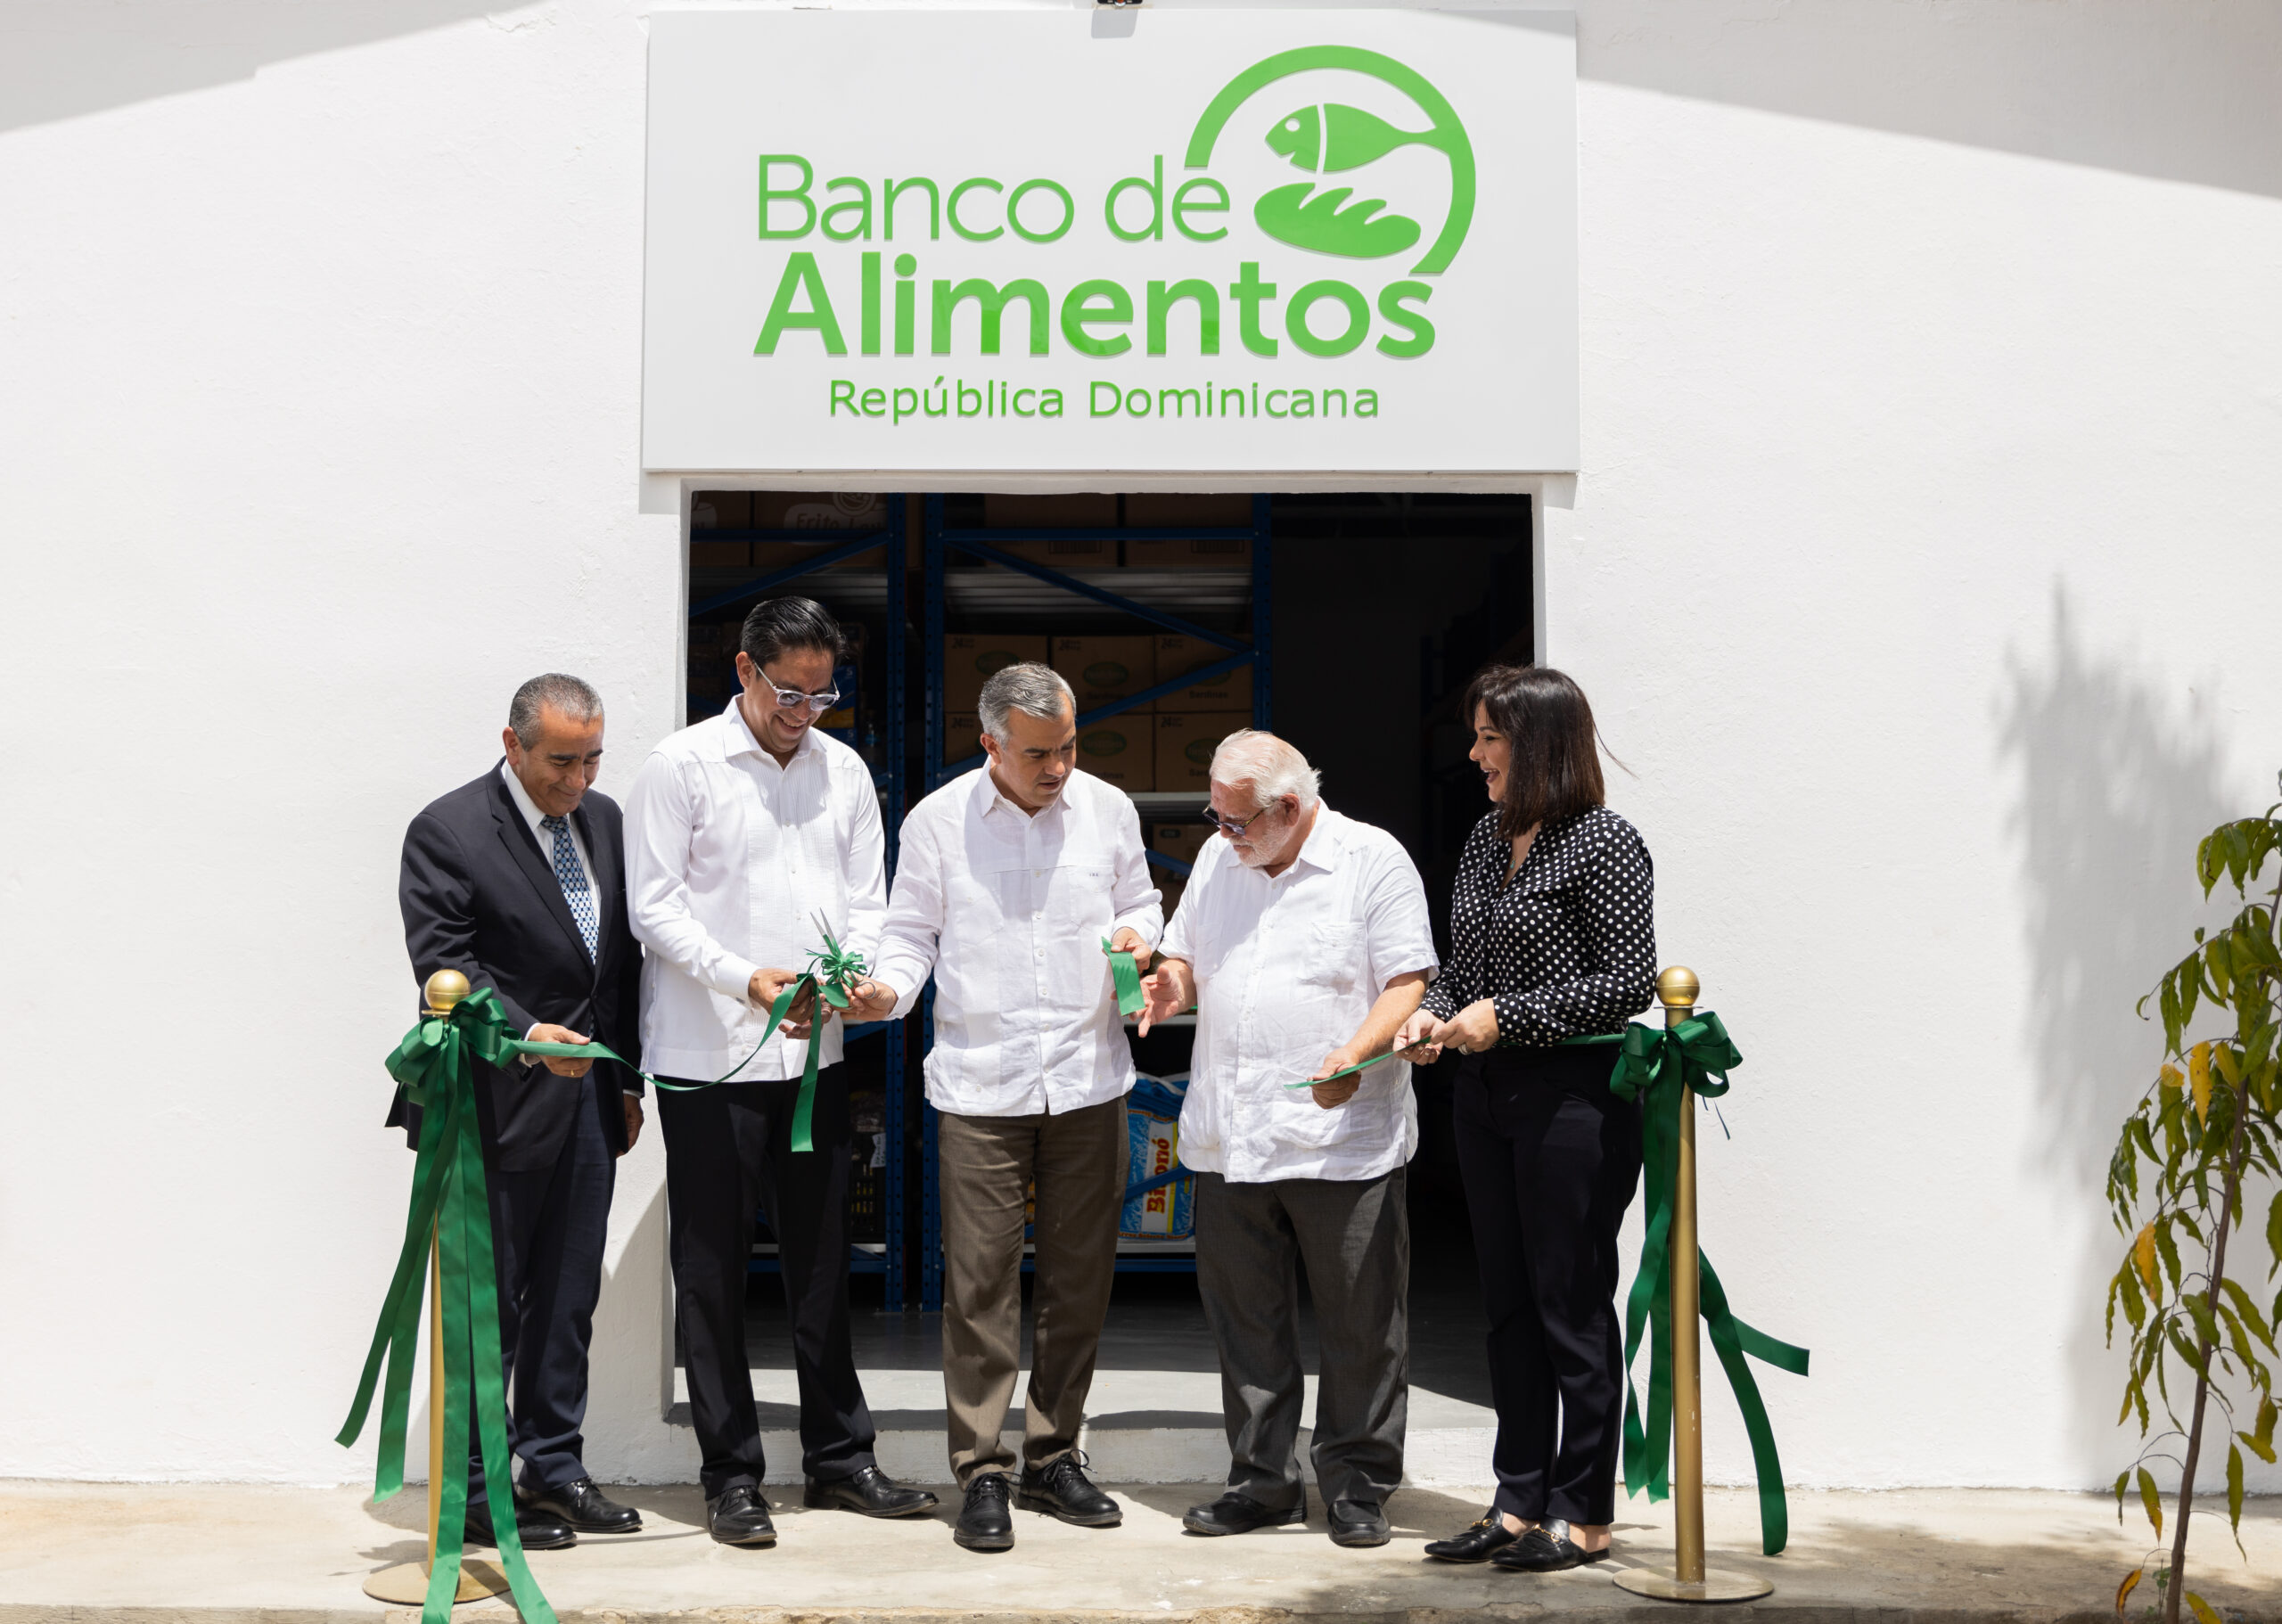 Banco de Alimentos inaugura sede en Santiago